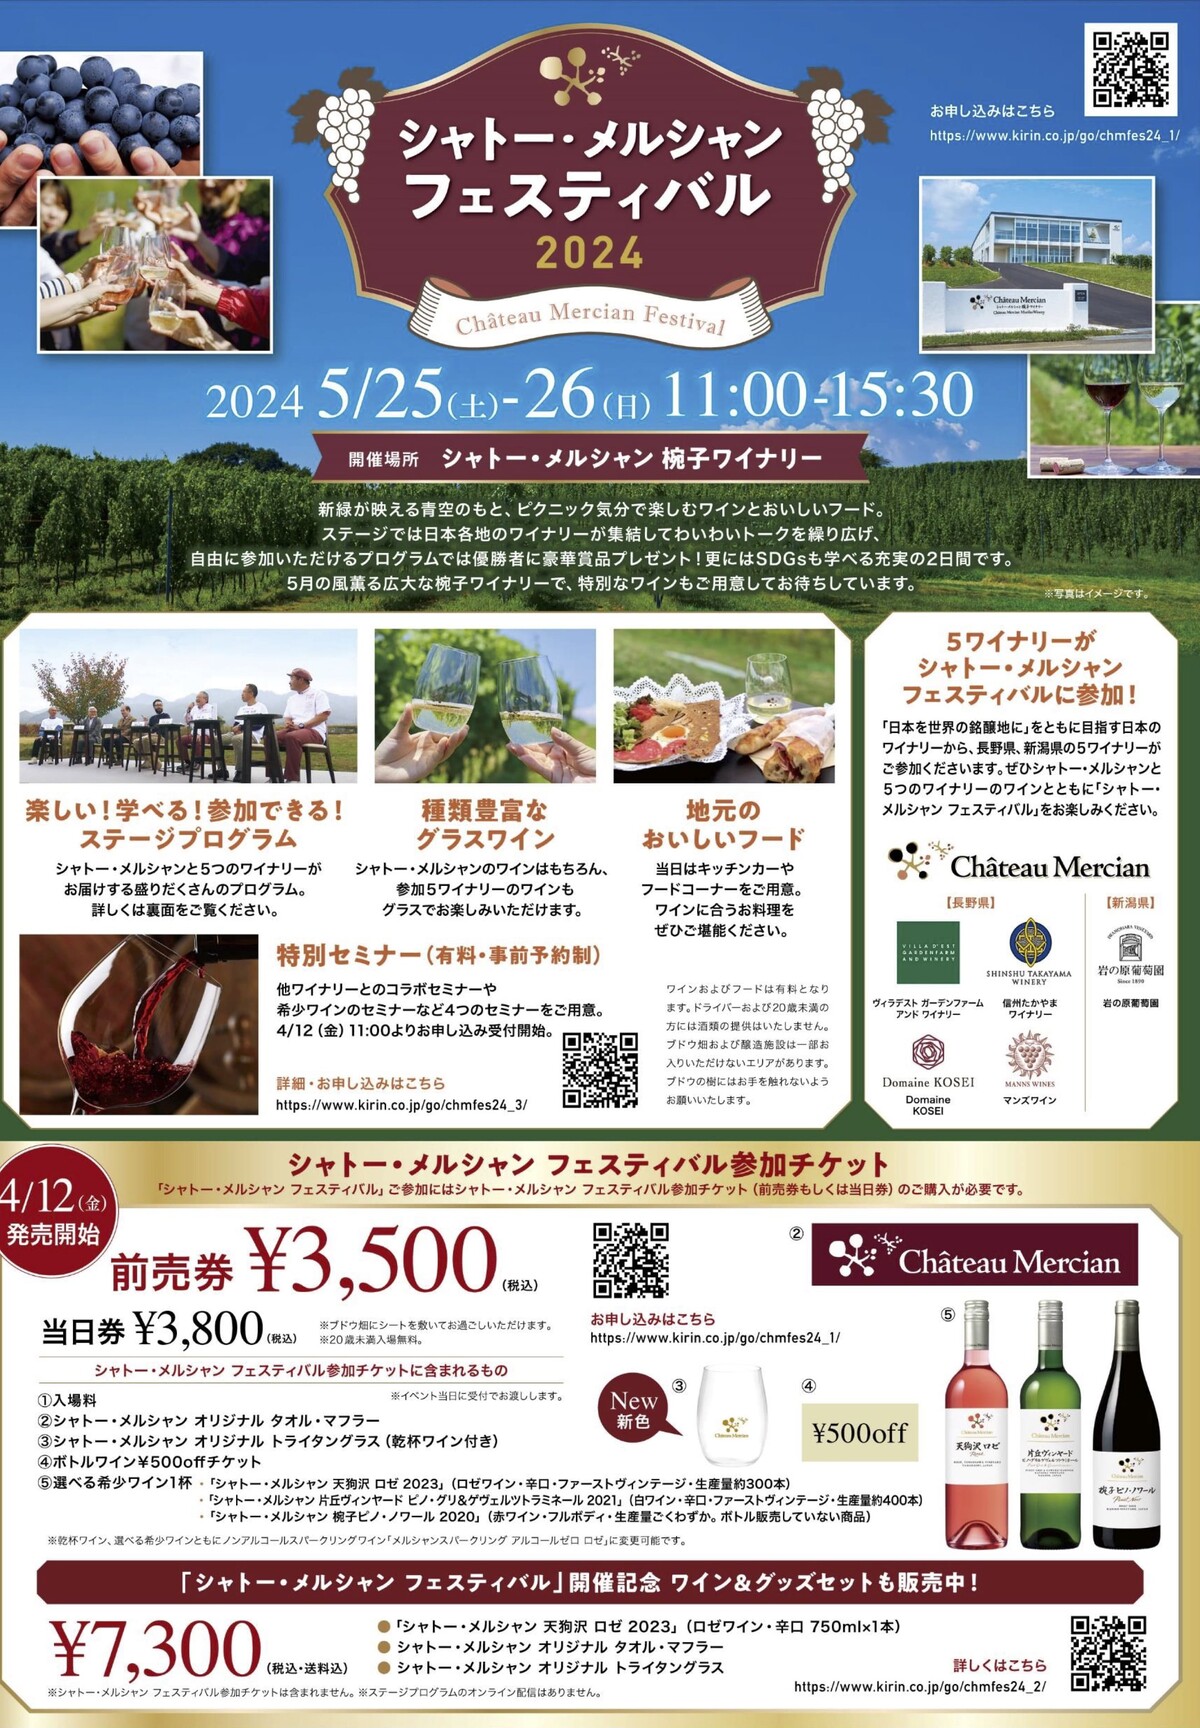 【ワインの祭典】5/25、5/26に上田市で「シャトー・メルシャン フェスティバル」が開催